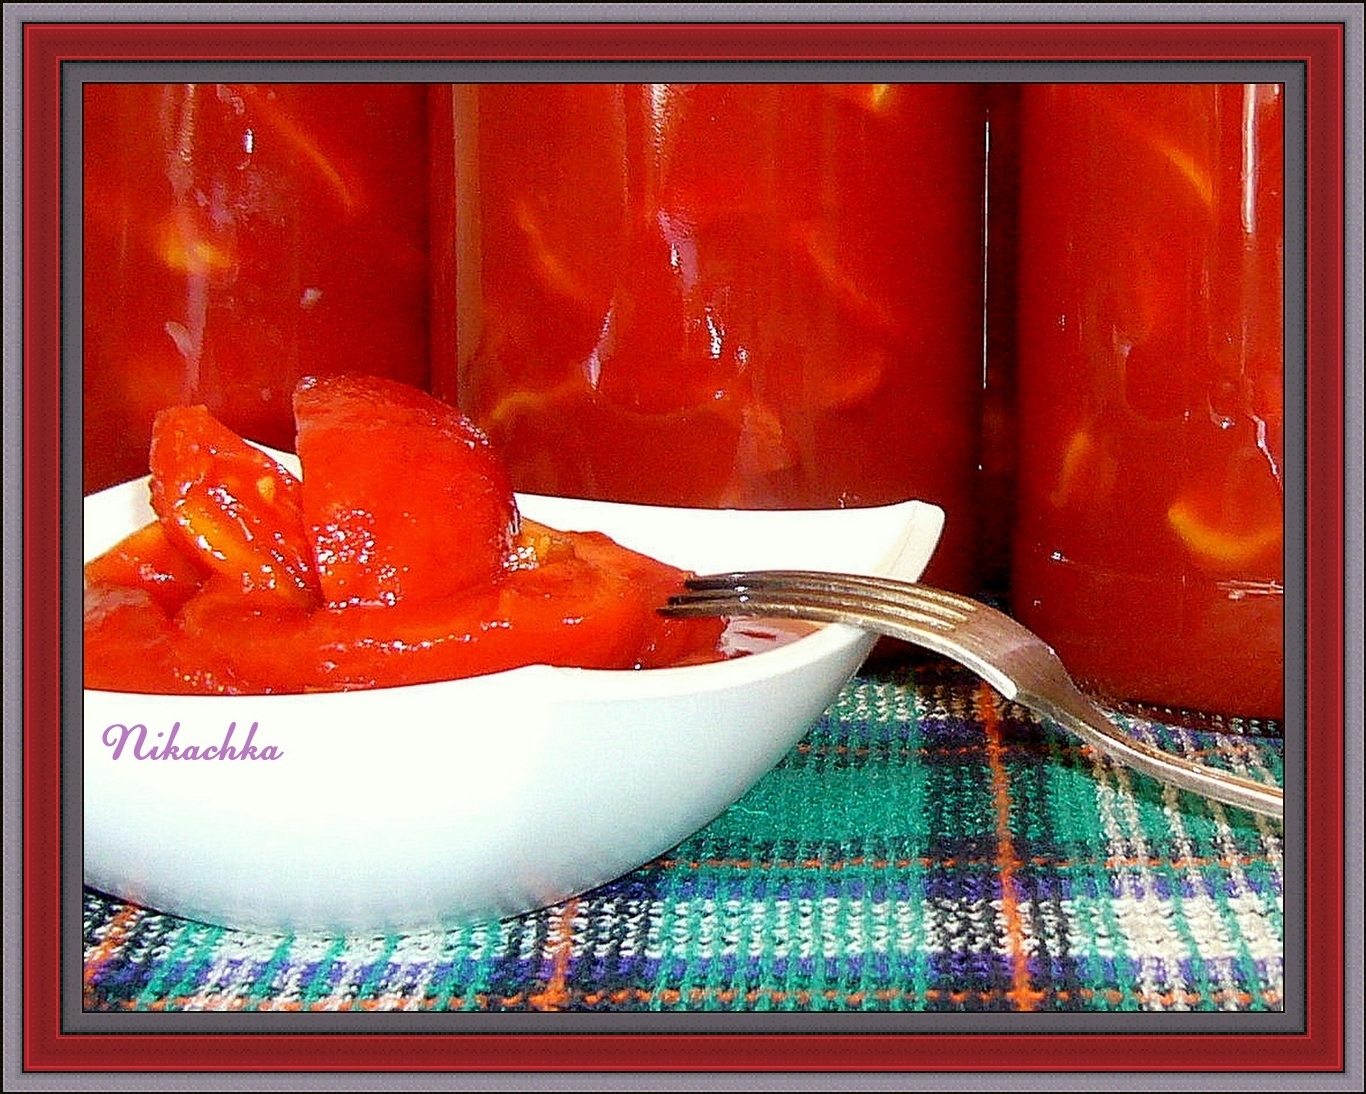 Как делают томатный сок. Томат помидор. Томаты в собственном соку. Помидоры в томатном соке. Томатная паста с кусочками помидоров.